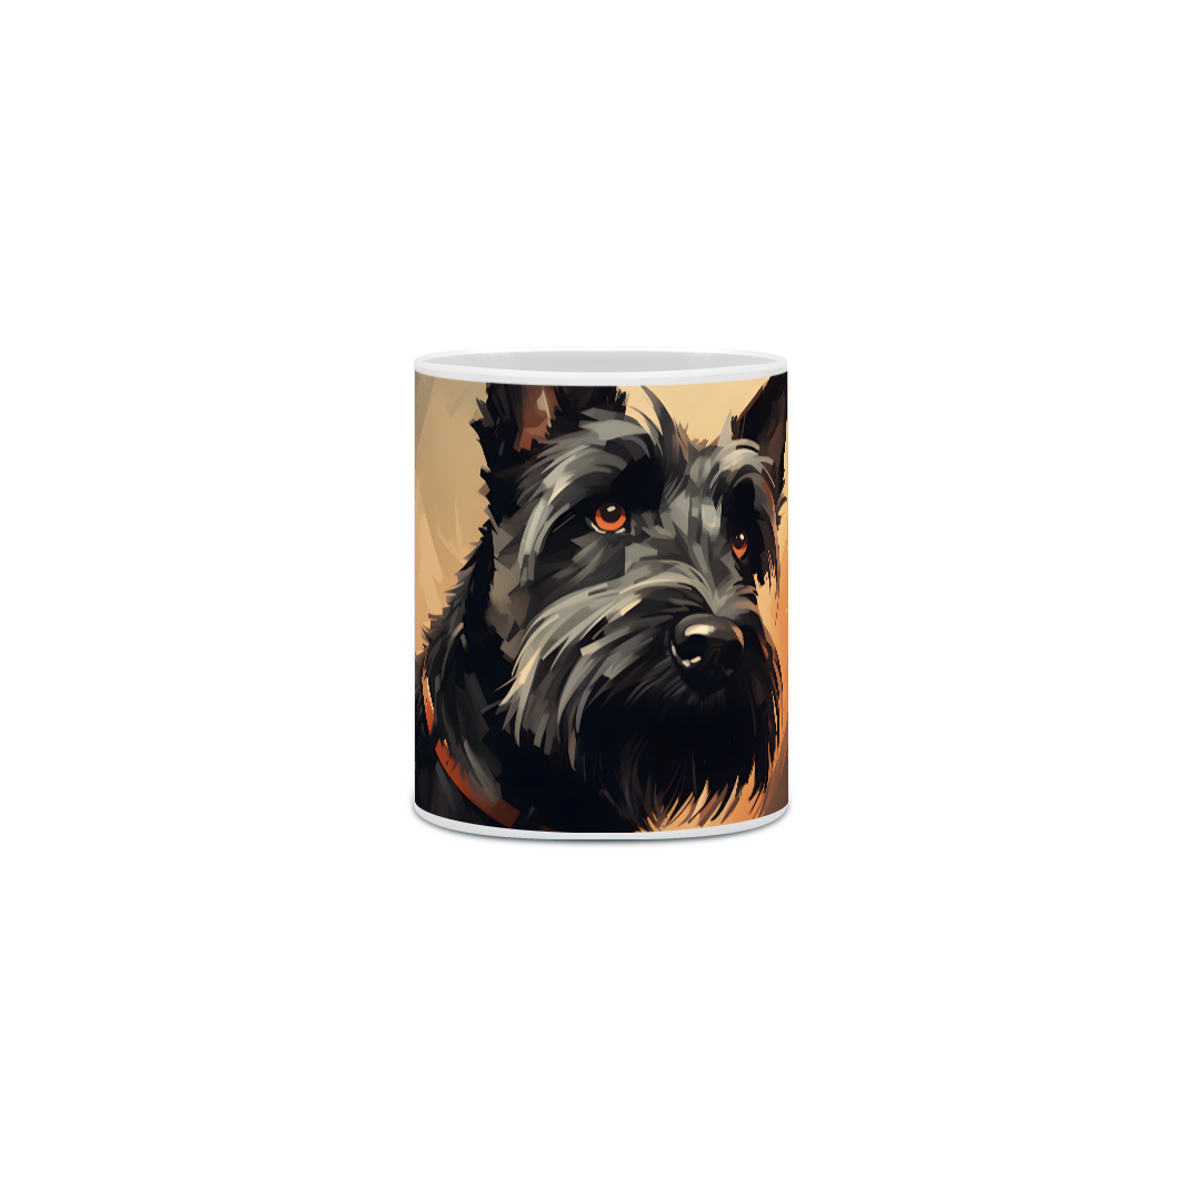 Nome do produto: Caneca Scottish Terrier com Arte Digital - #Autenticidade 0009